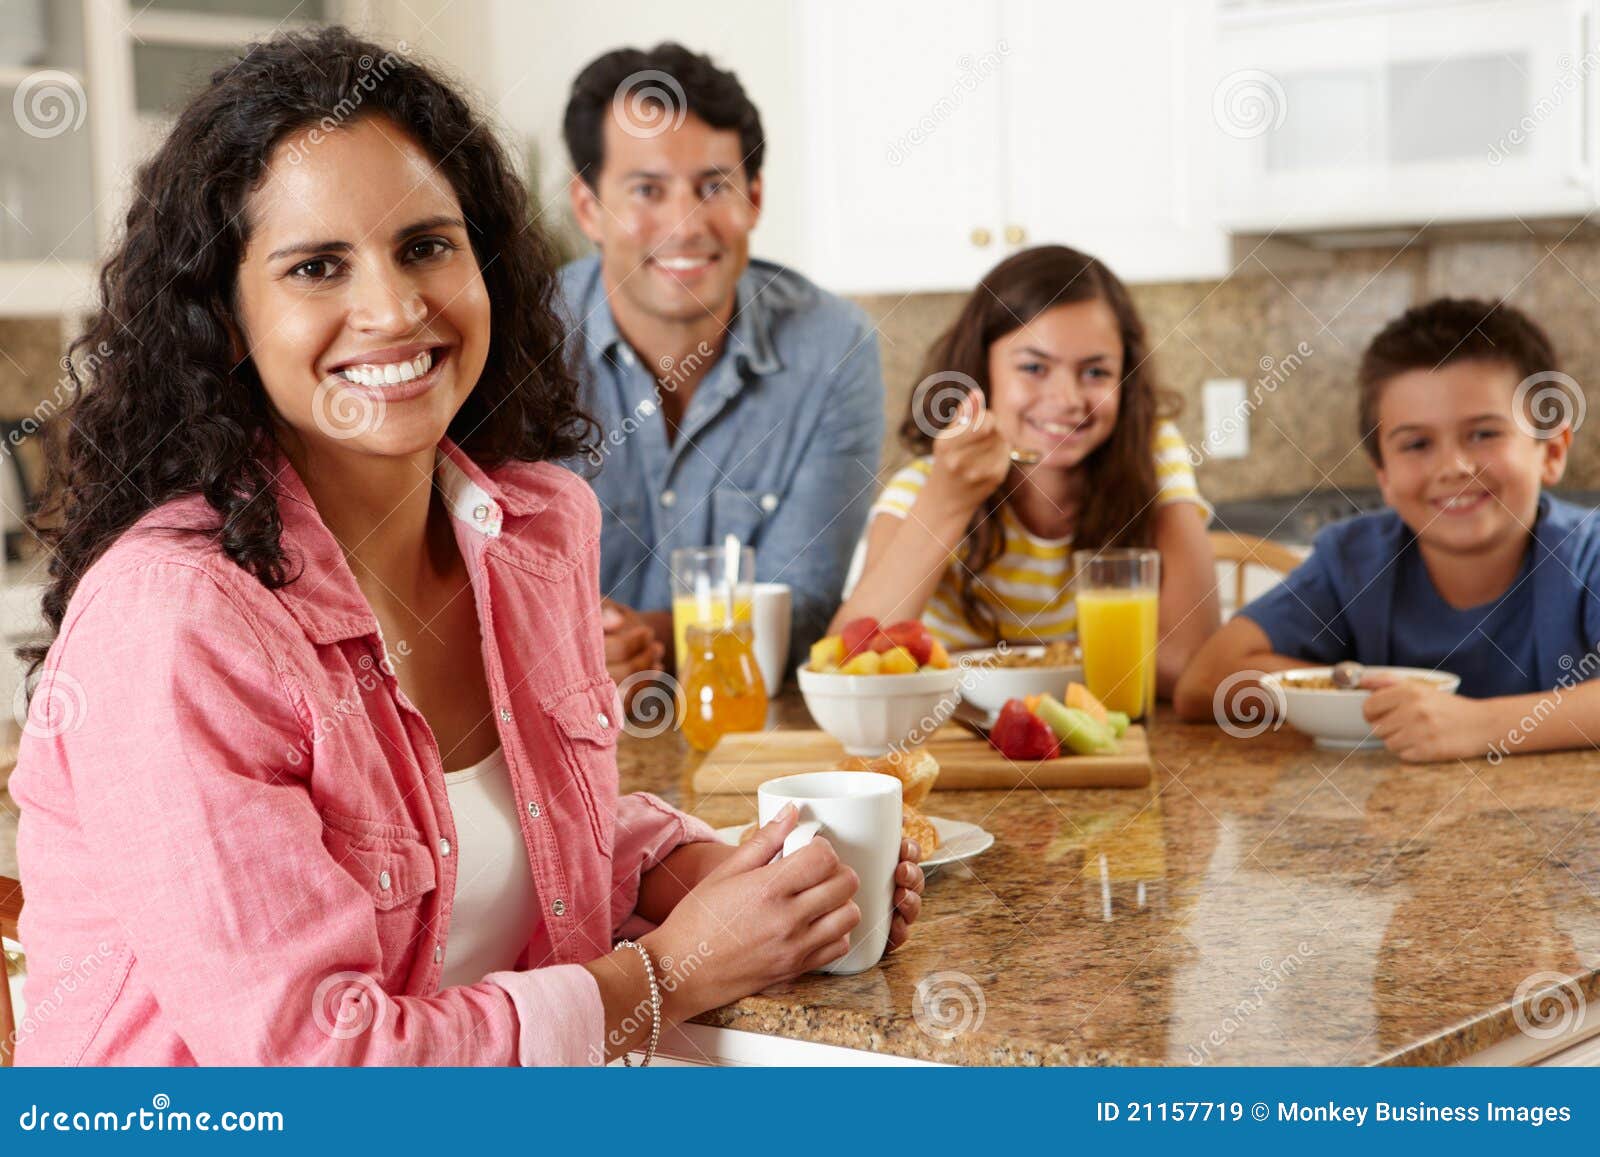 hispanic family eating breakfast